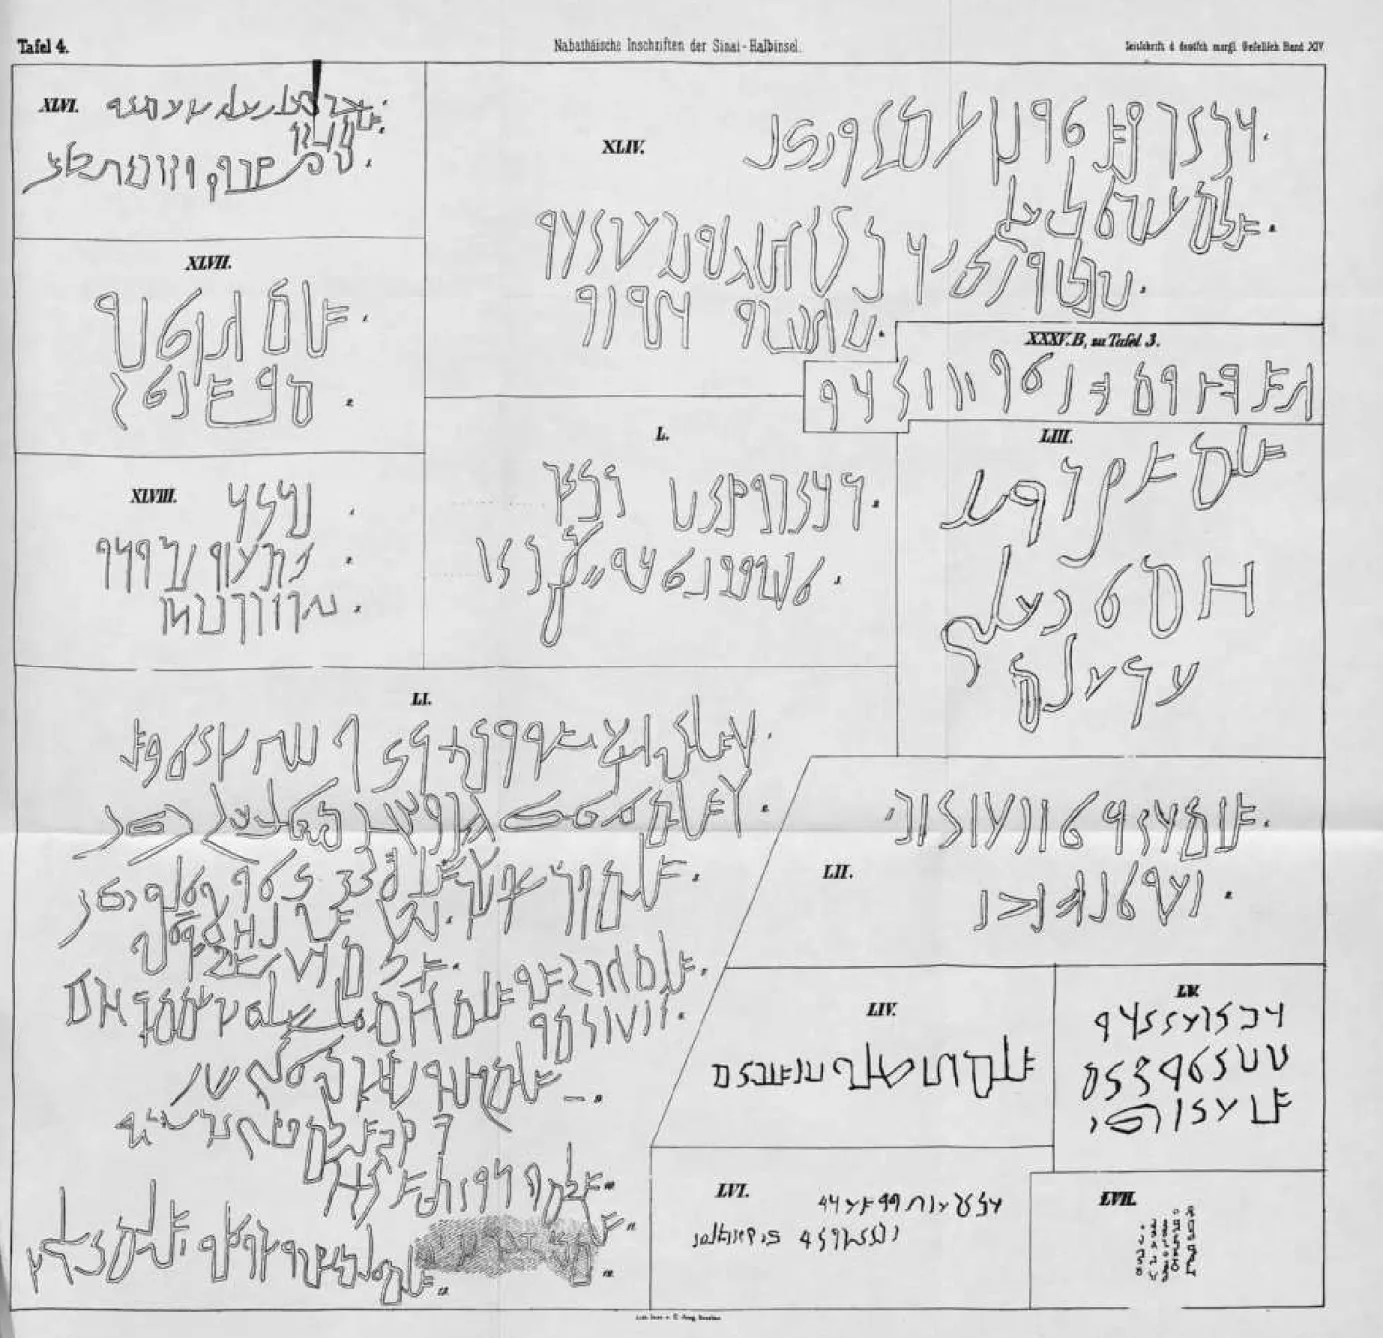 Tafel 4. Nabathäiscke Inschriften der Sinai-Halbinsel. Zeitrckift i deitffch moräl ßereUfch